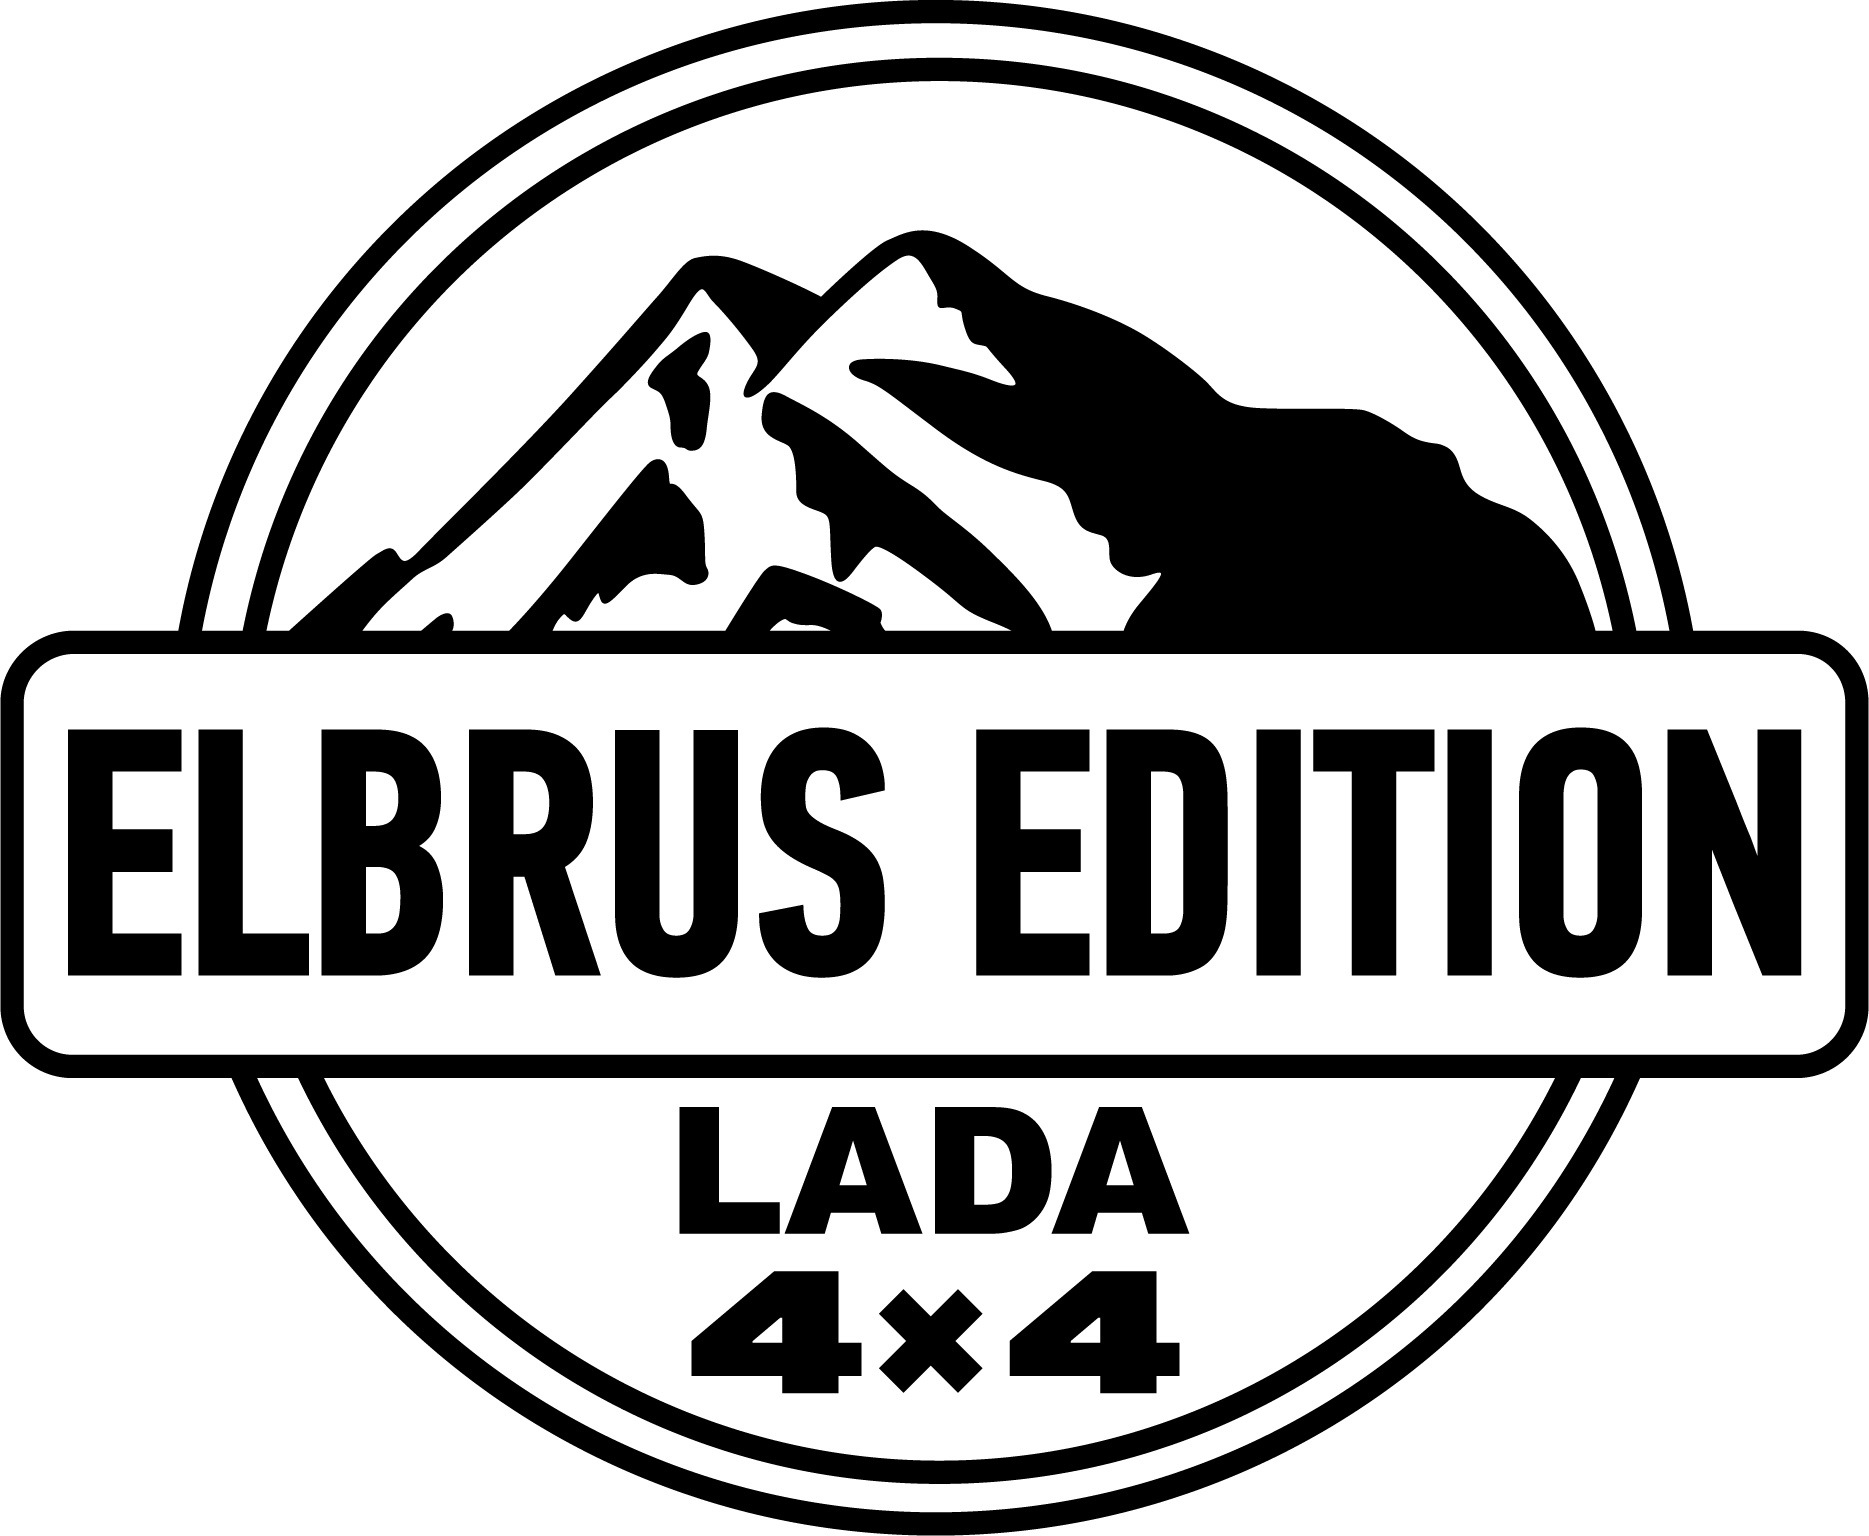 Эльбрус логотип. Наклейка Эльбрус эдишн. Эльбрус эмблема. Наклейка Elbrus Edition.